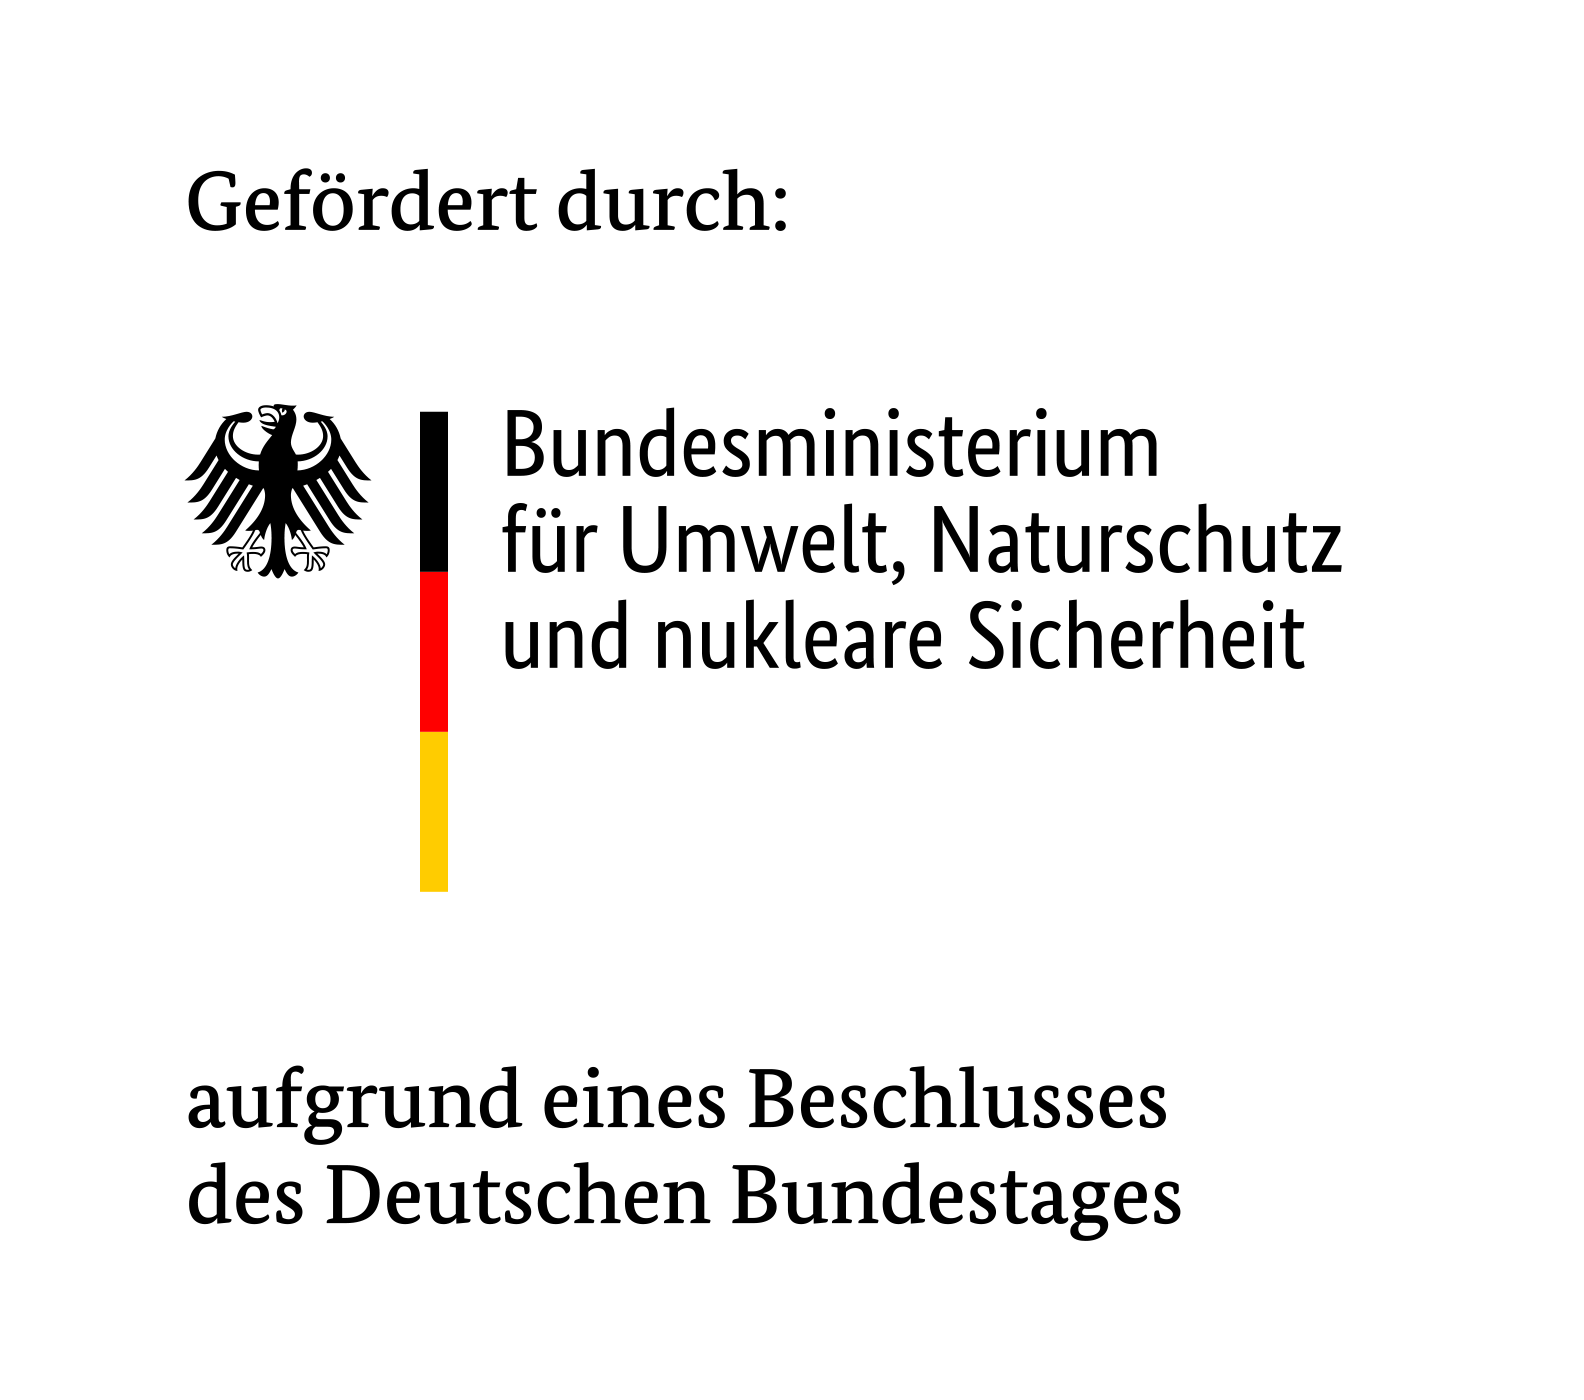 Logo: Förderung des Bundesministeriums für Umwelt, Naturschutz, Bau und Reaktorsicherheit